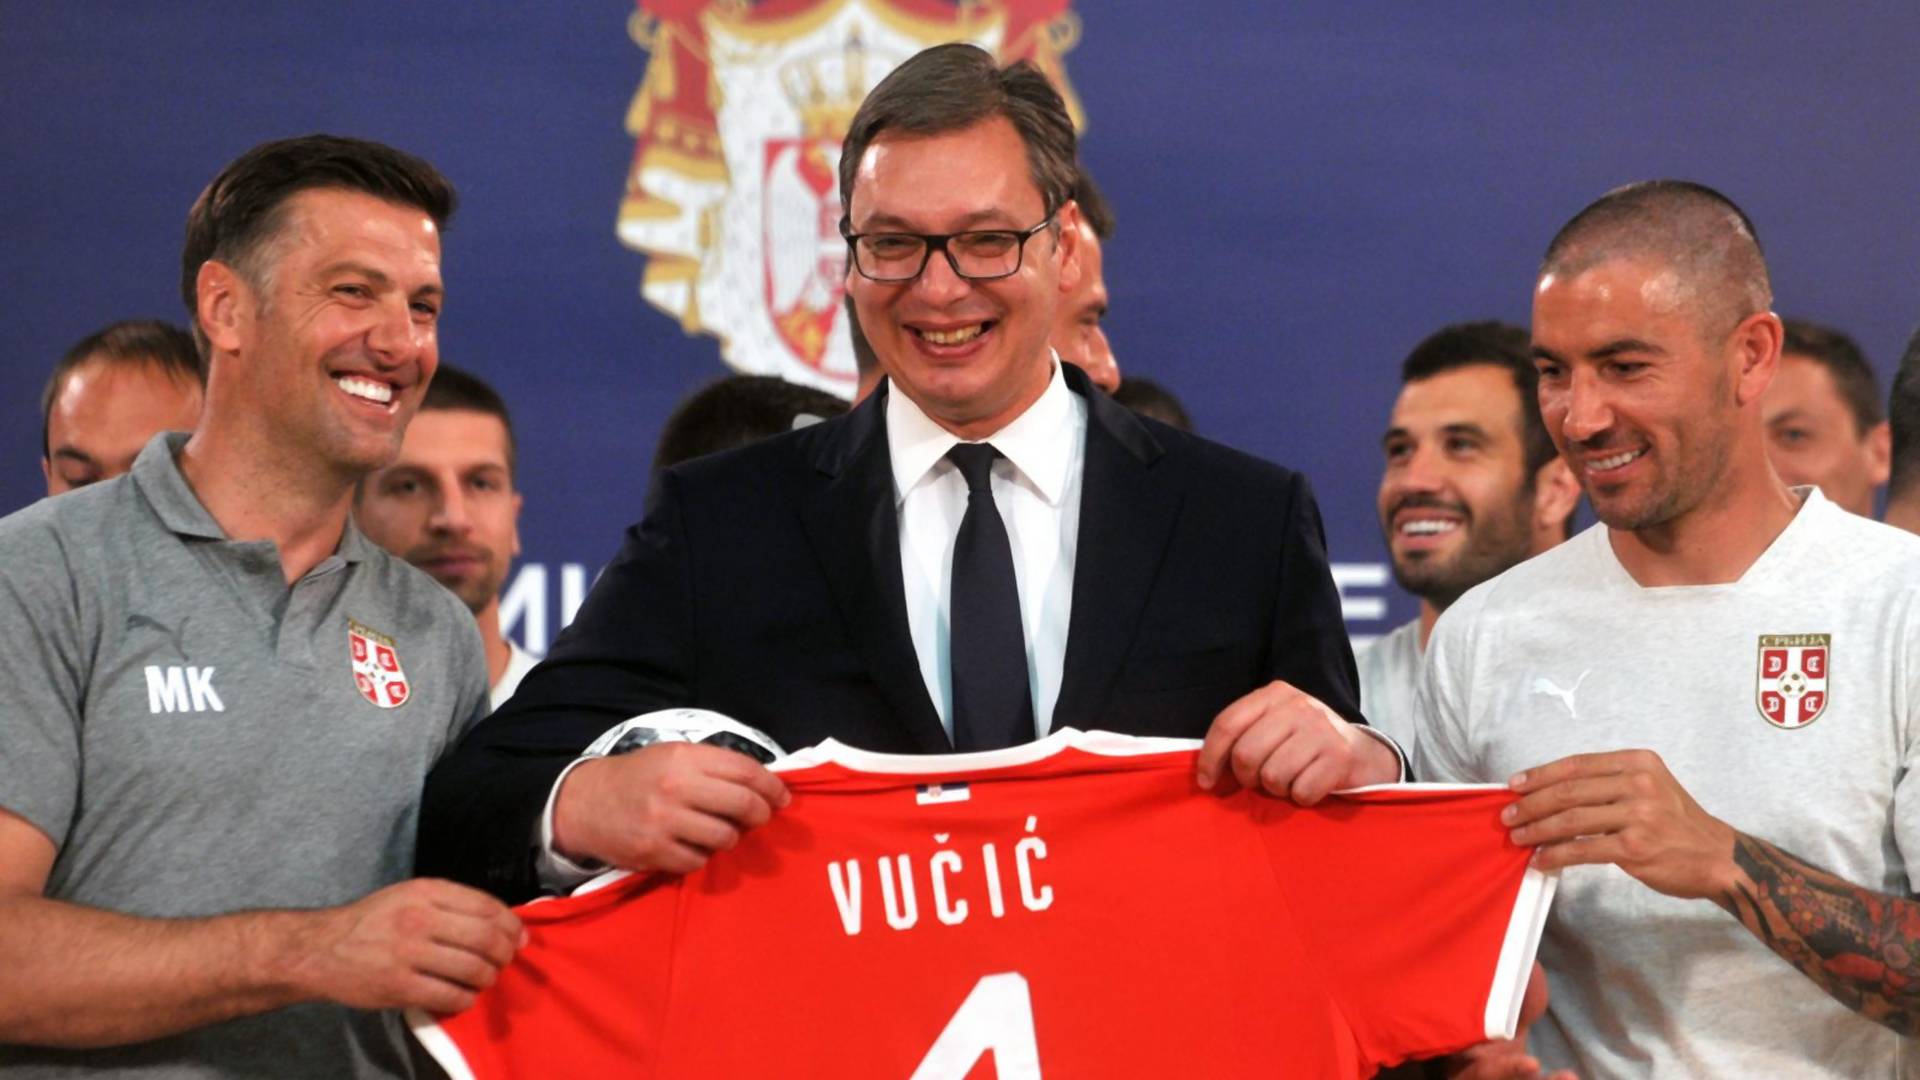 Detalj koji je svima promakao na fotografiji Vučića i fudbalera